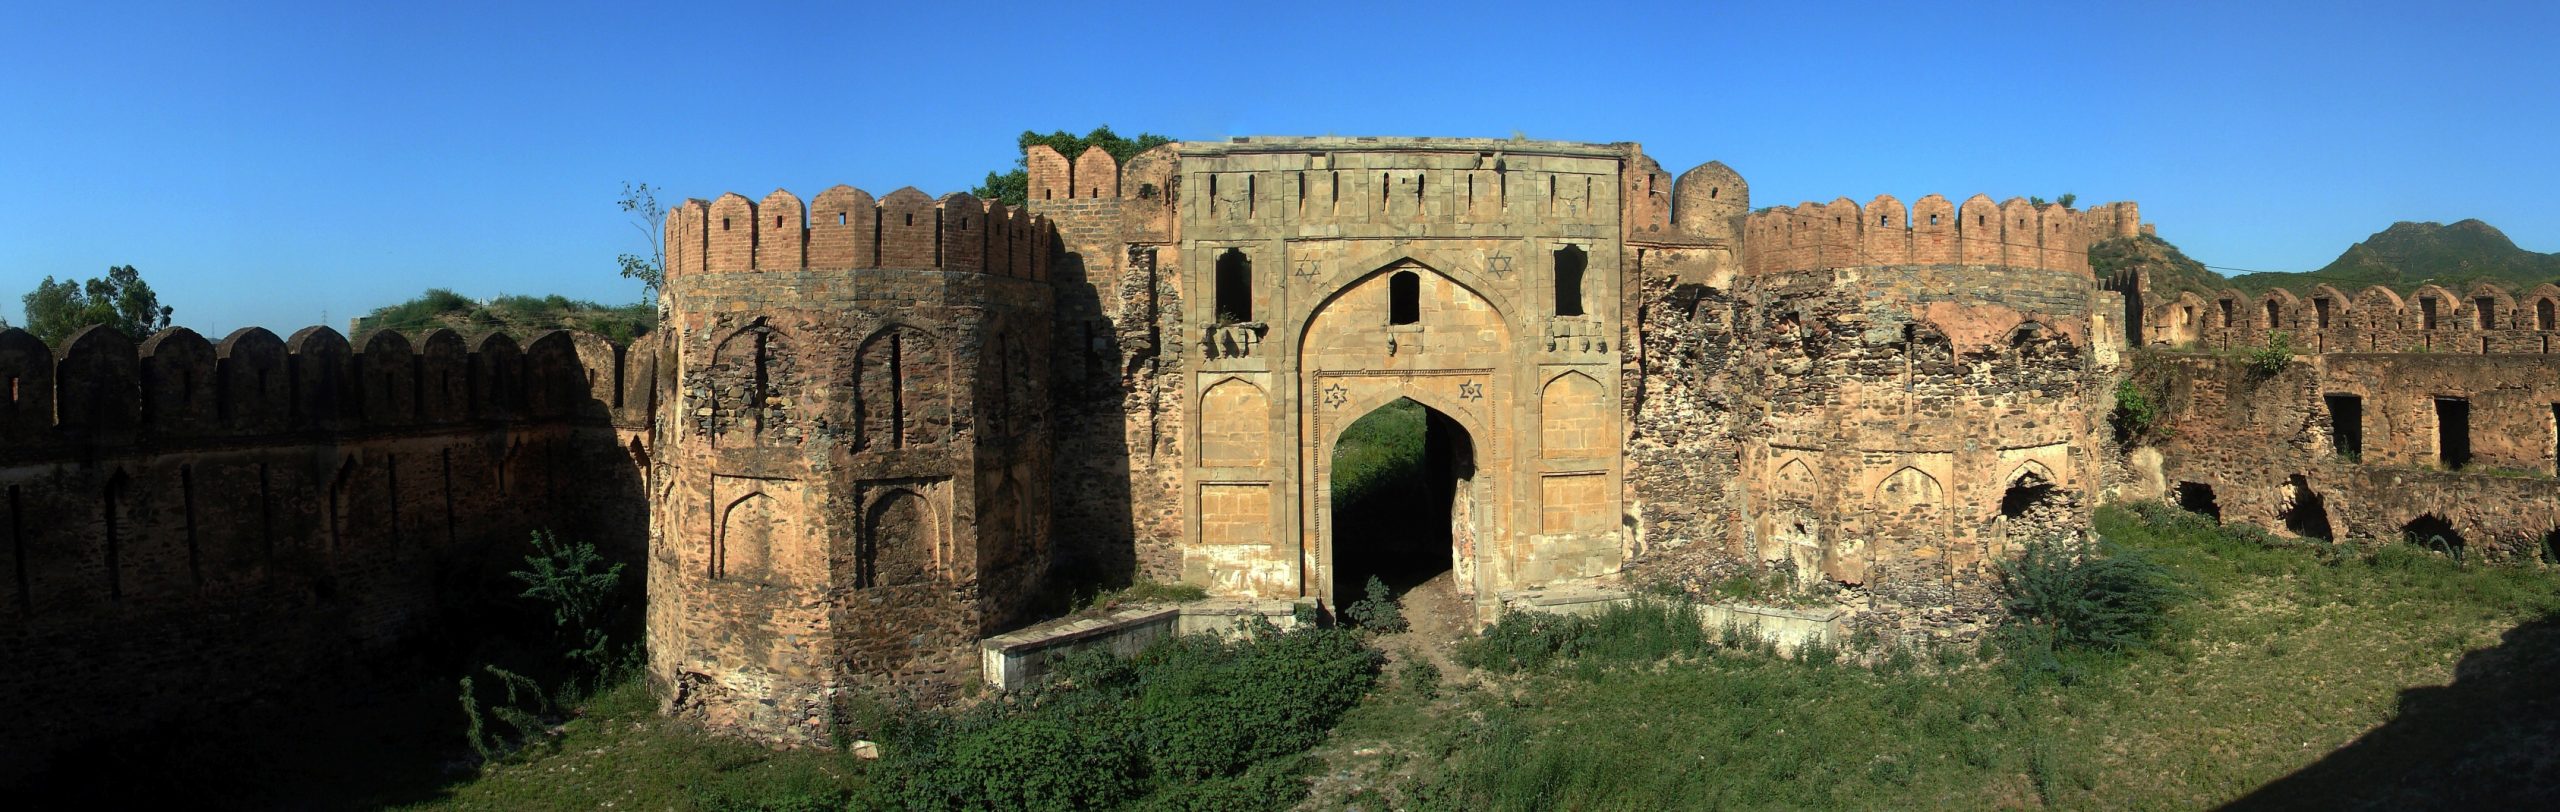 قلعہ اٹک ایک لاکھ روپے میں فروخت کر دیا گیا